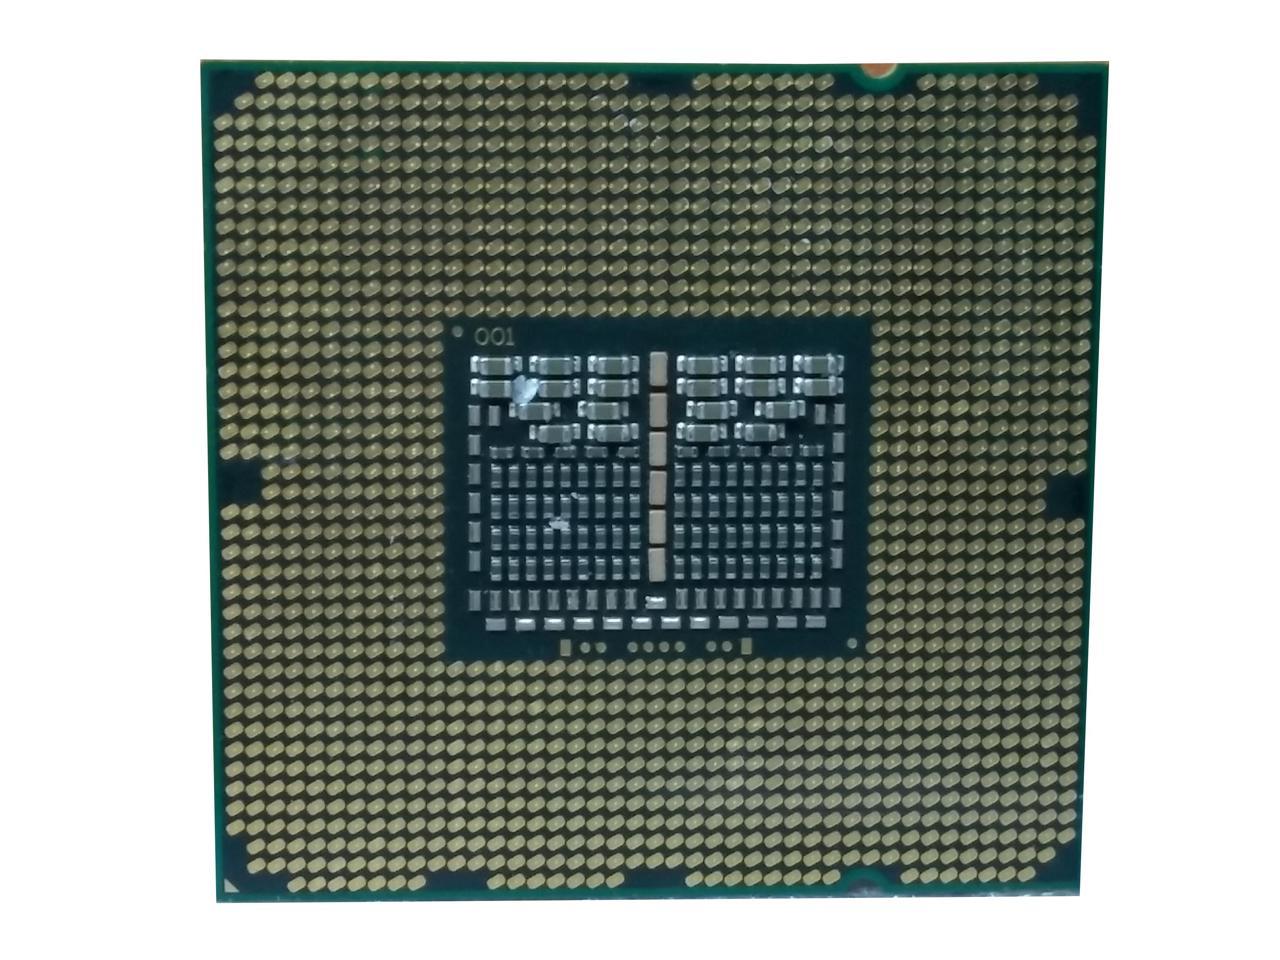 Intel XEON Quad CORE Processor E5507 2.26GHZ 4MB Smart Cache 4.8GT/S 80W